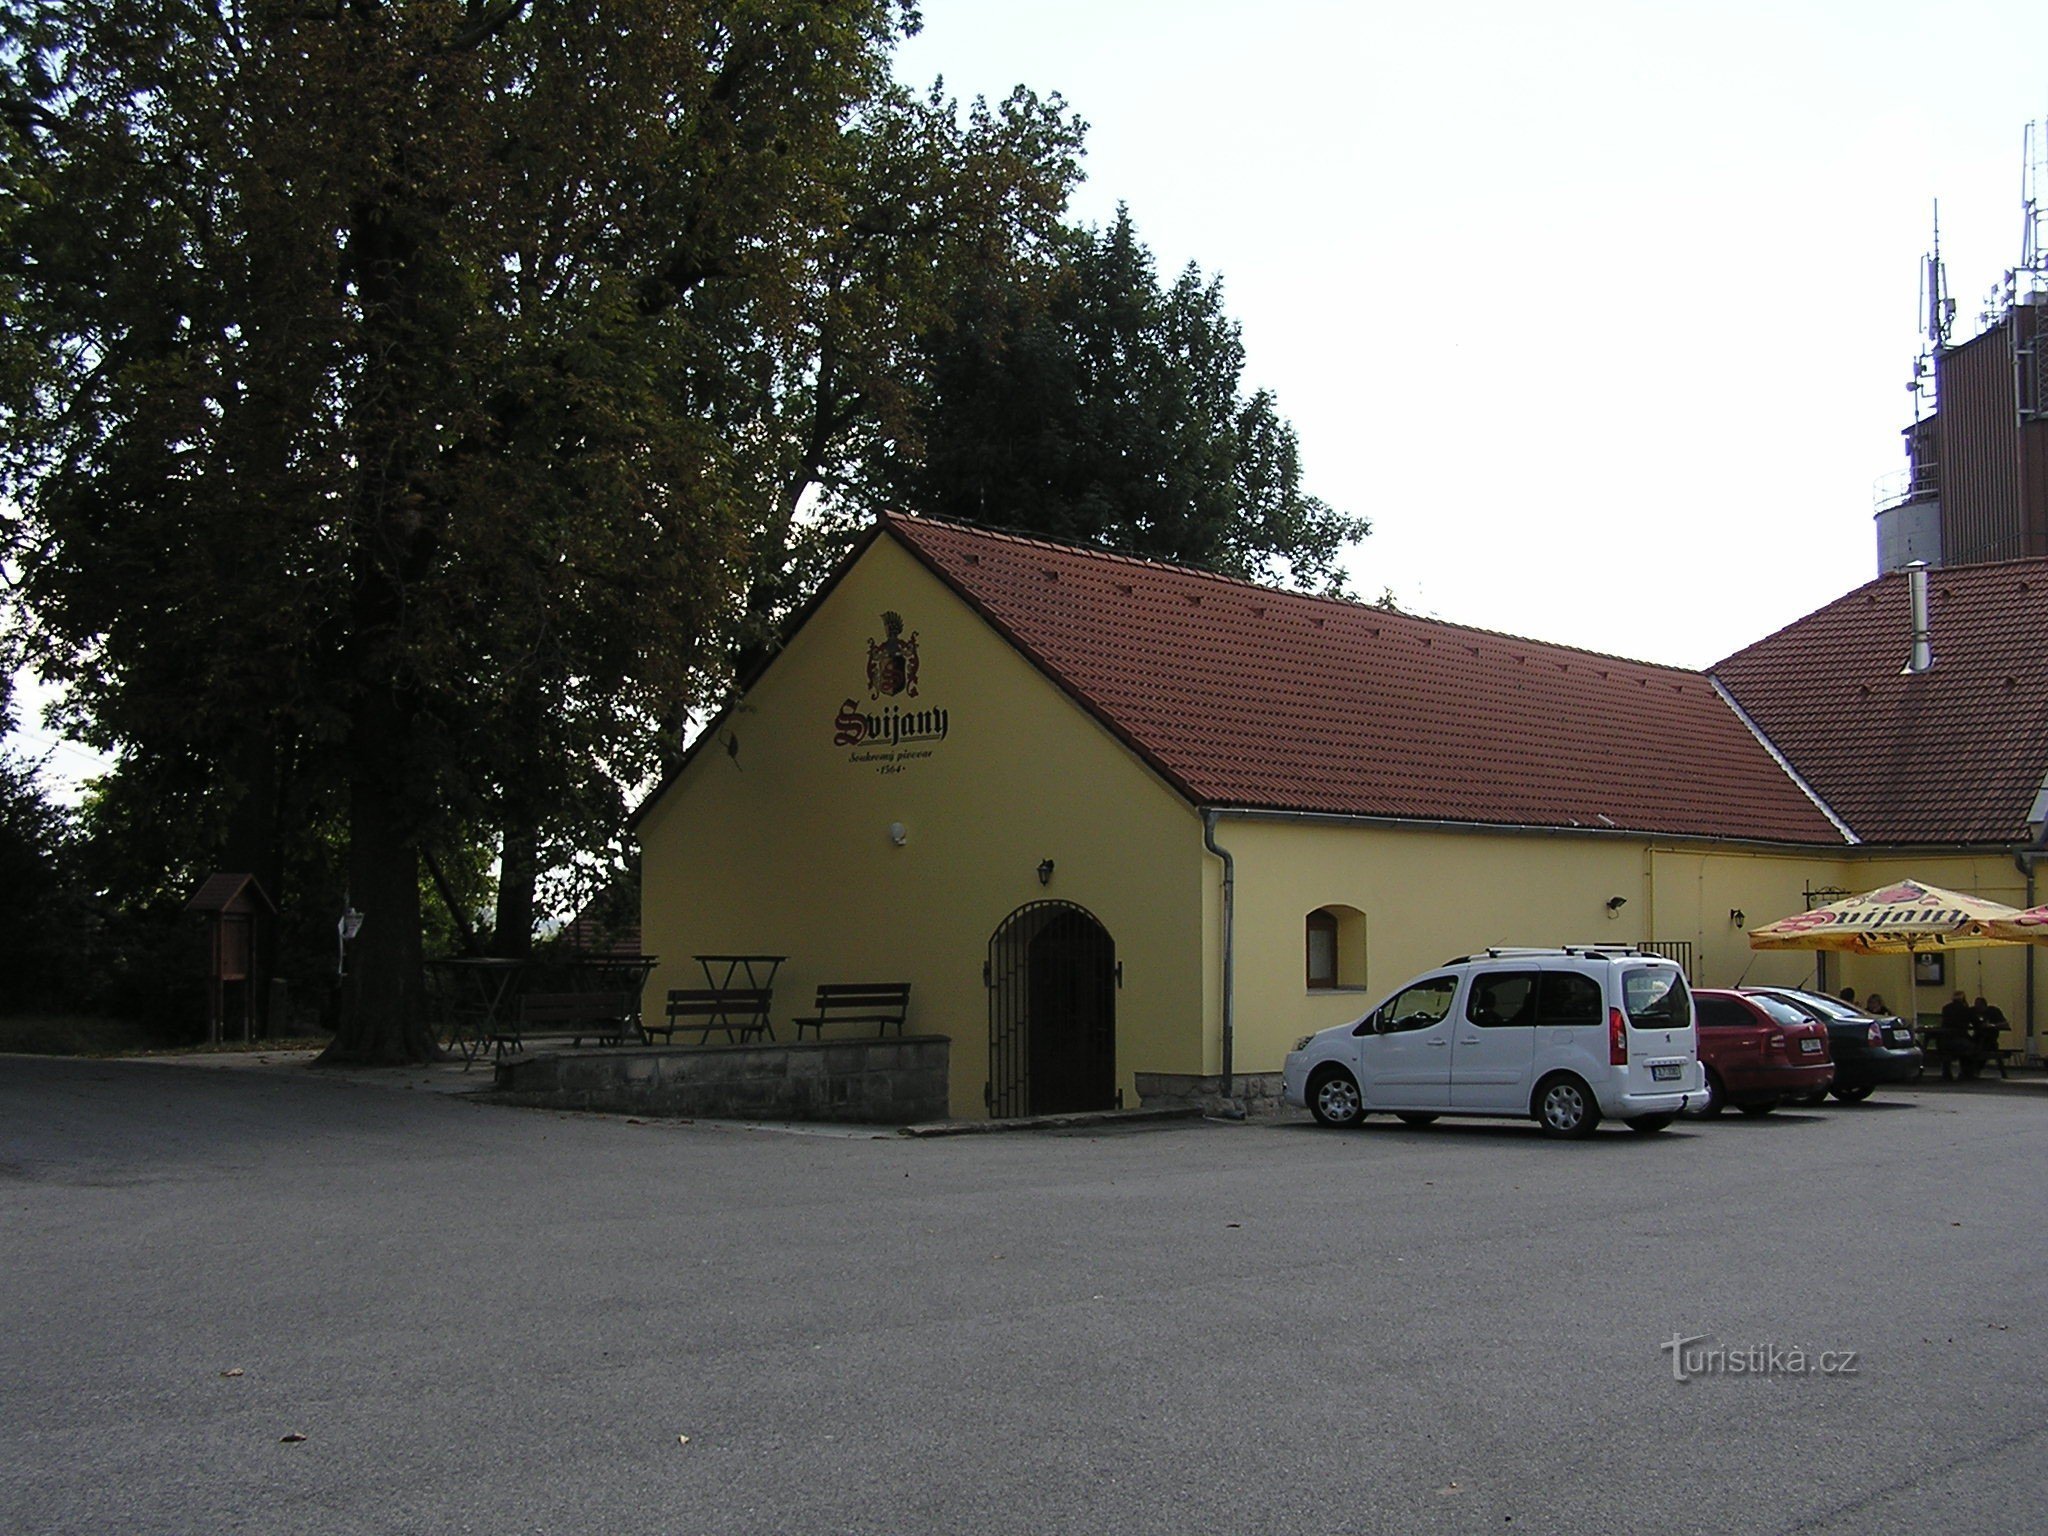 Svijany-brouwerij (8/2014)